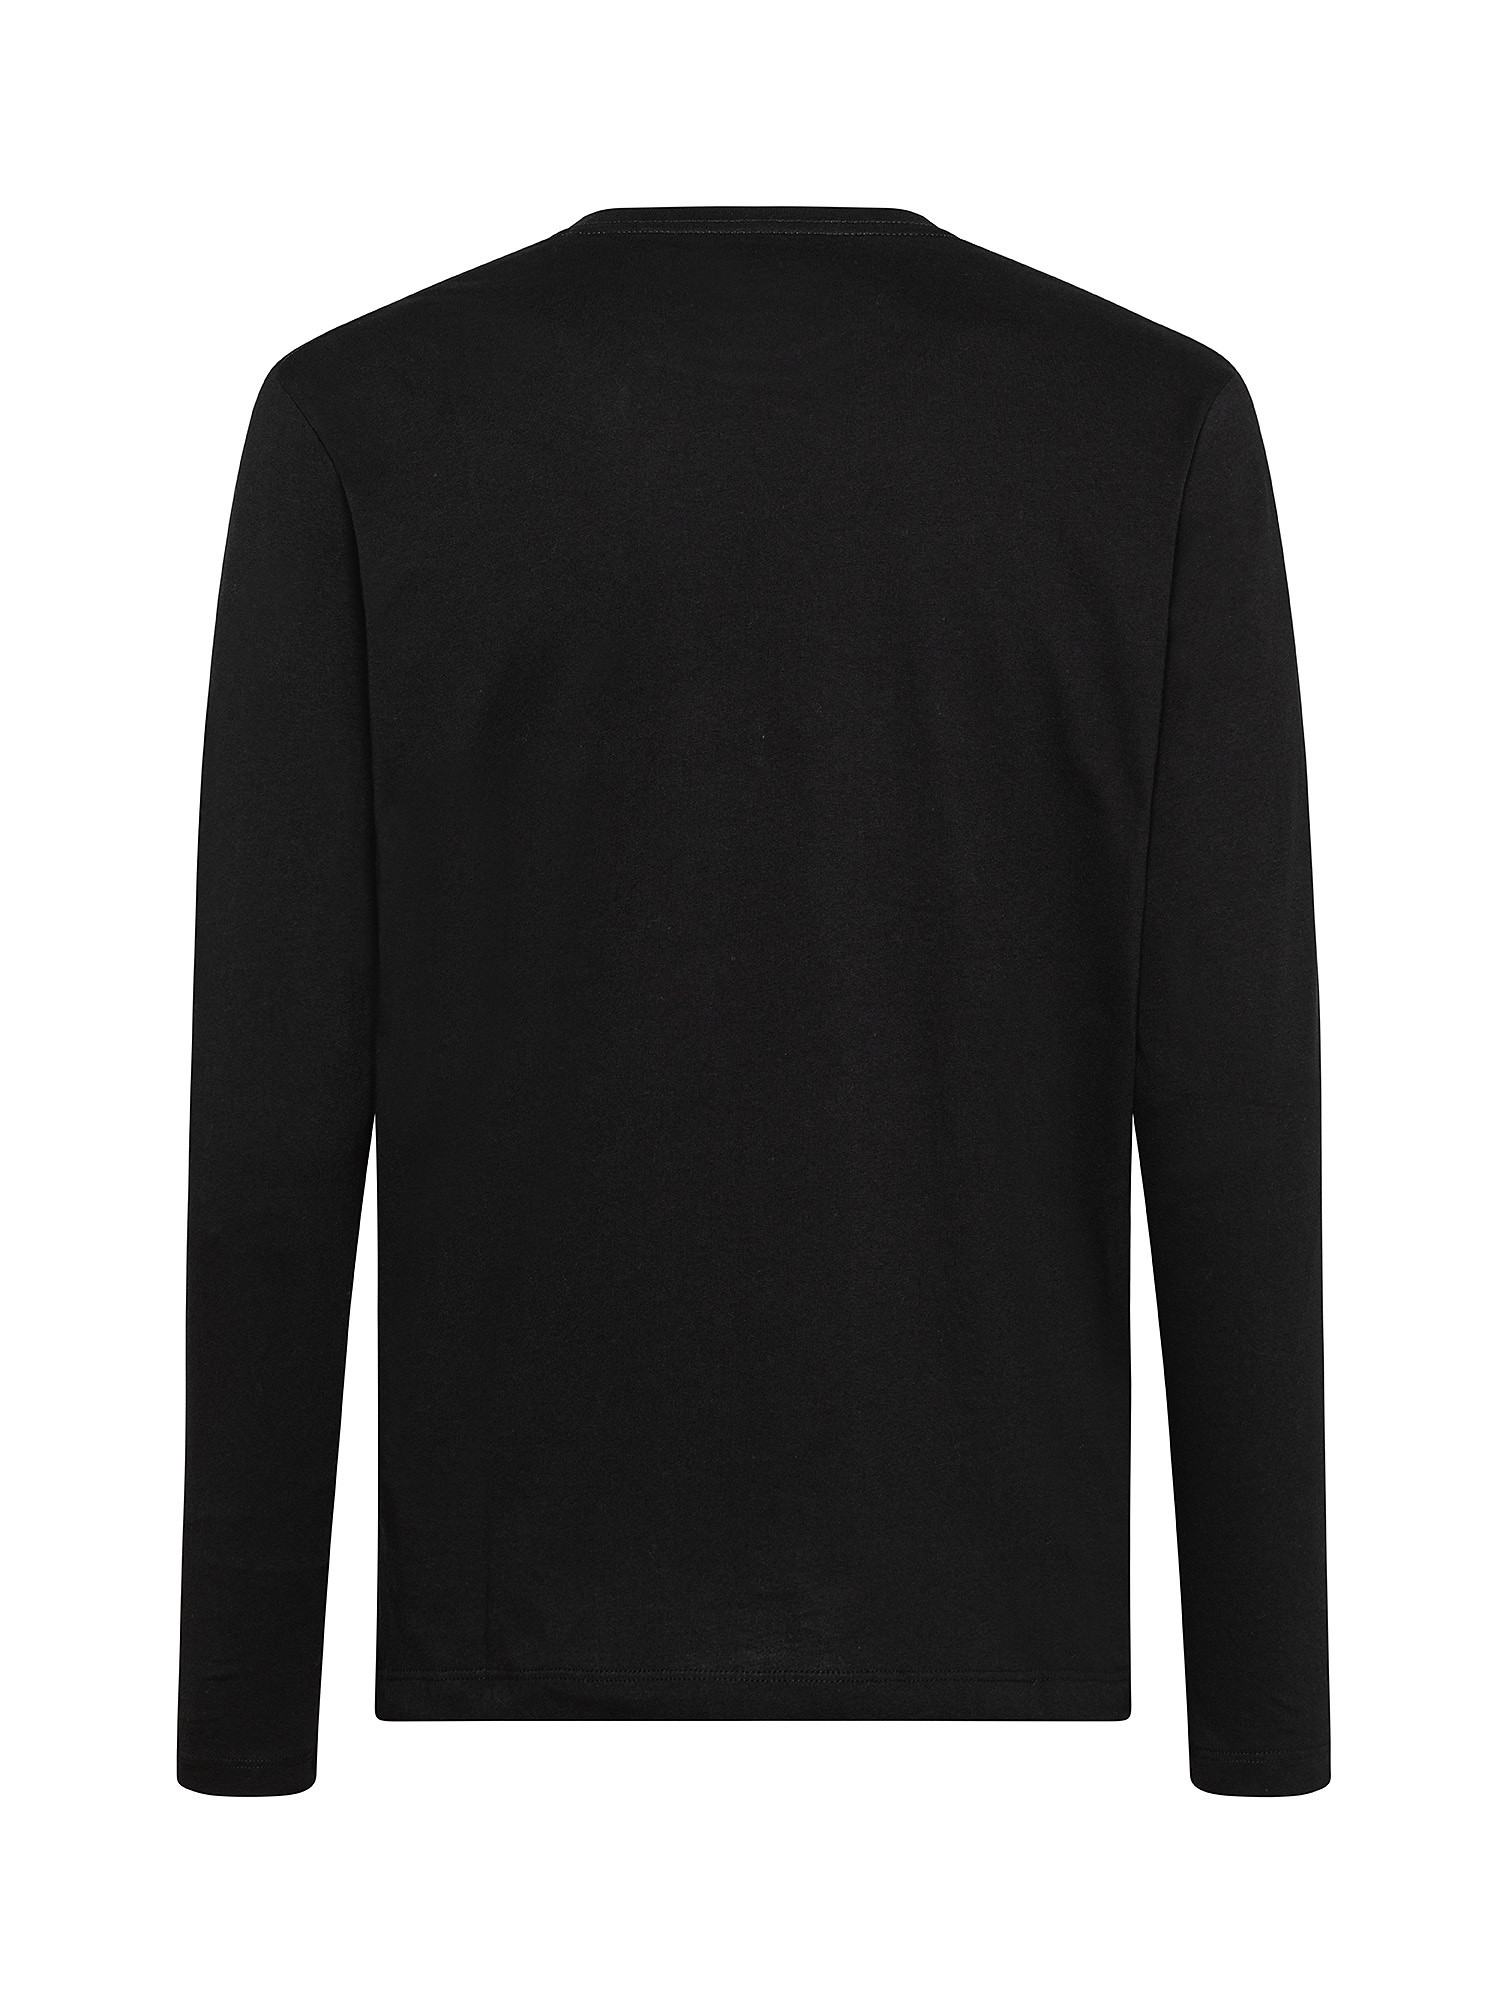 Eggo 'Portobello' long-sleeved T-shirt, Black, large image number 1